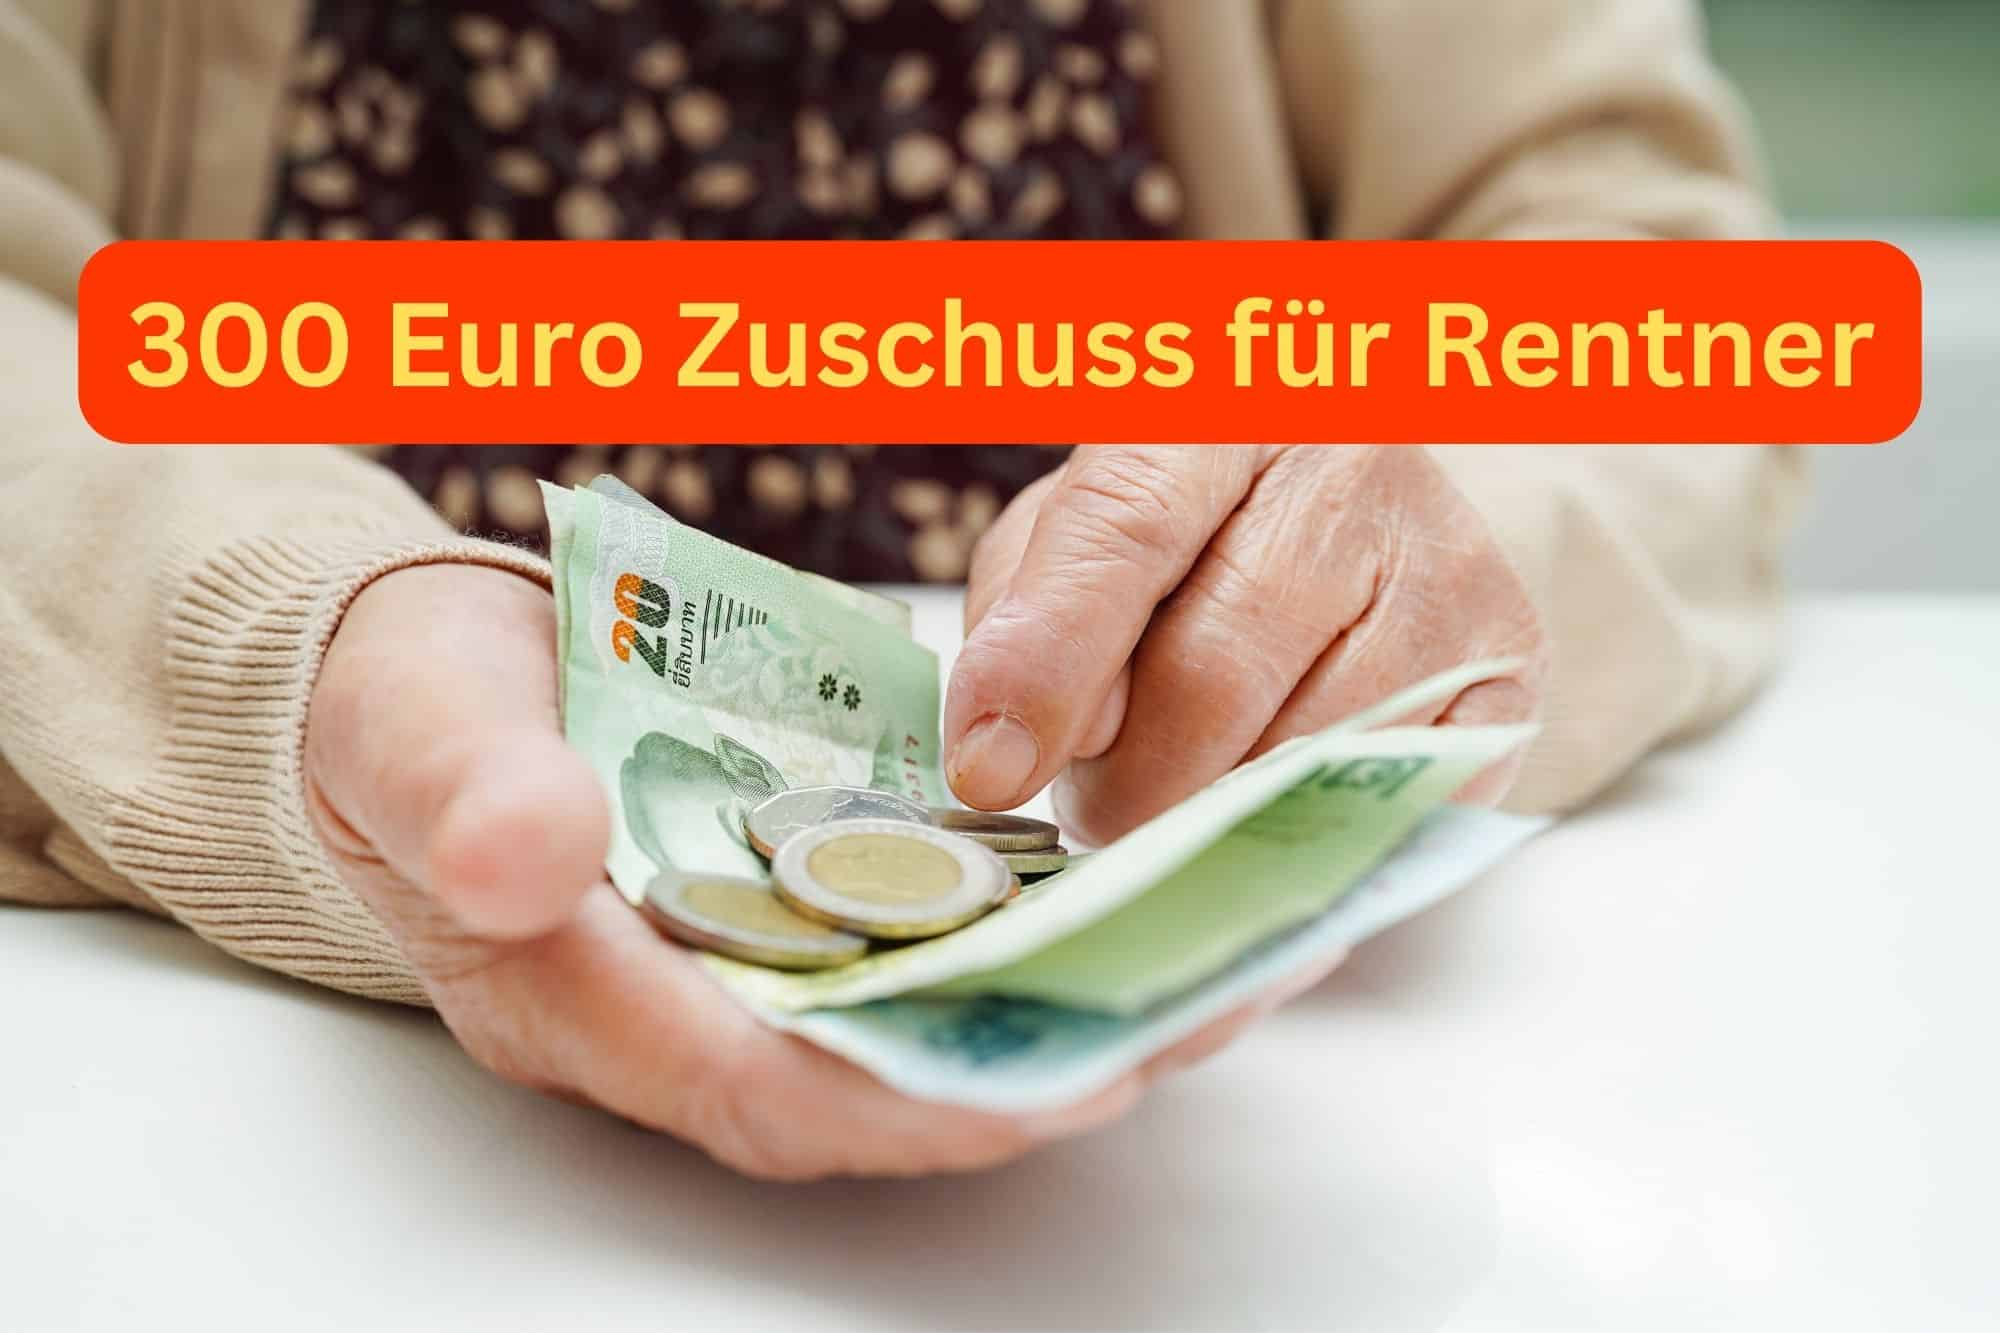 300-Euro-Zuschuss für Rentner kommt – Über 1 Million Rentner jubeln